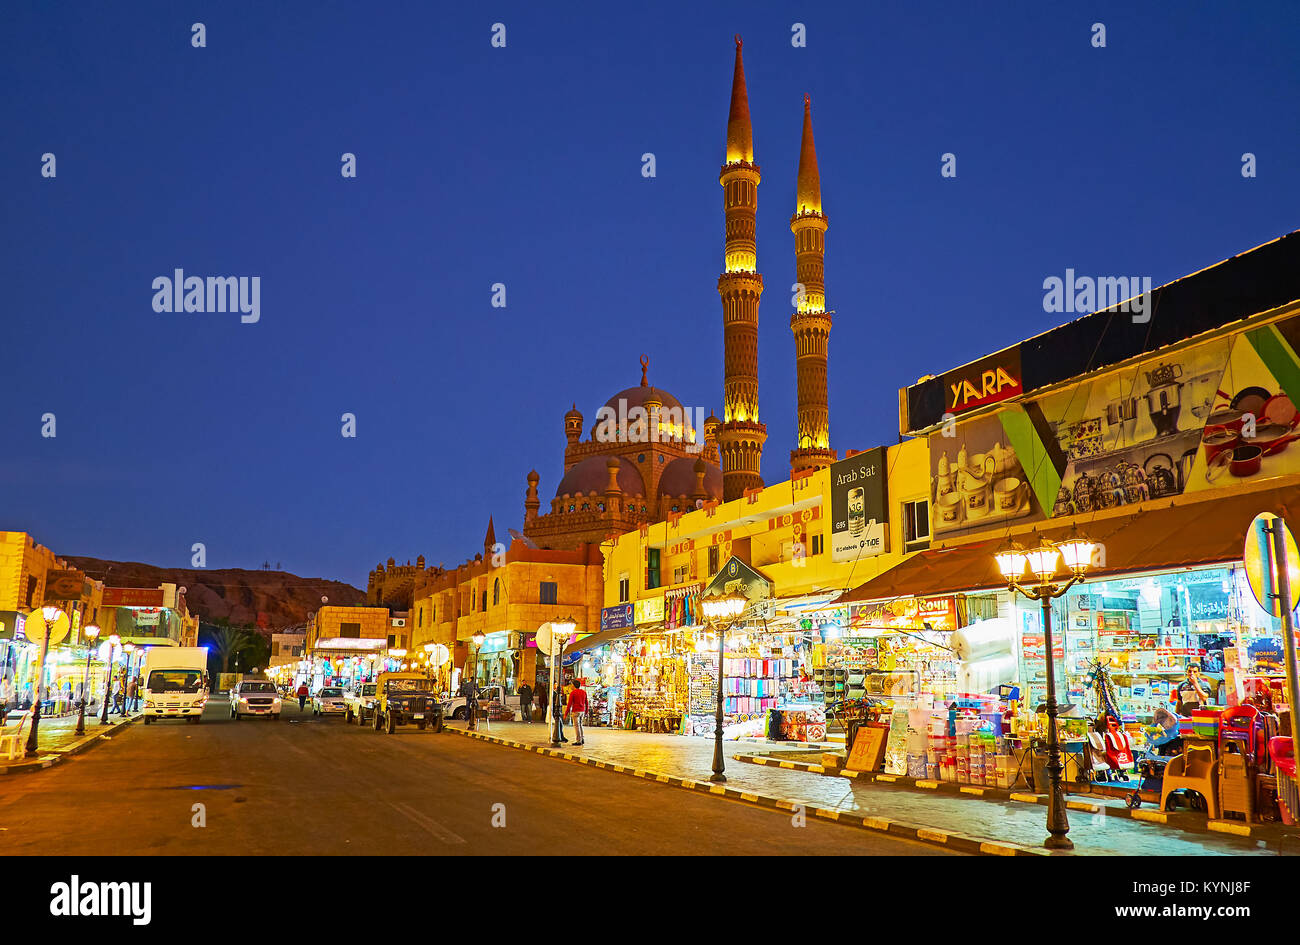 SHARM EL SHEIKH, EGYPT- DECEMBER 15, 2017: The tourist bazaar in ...